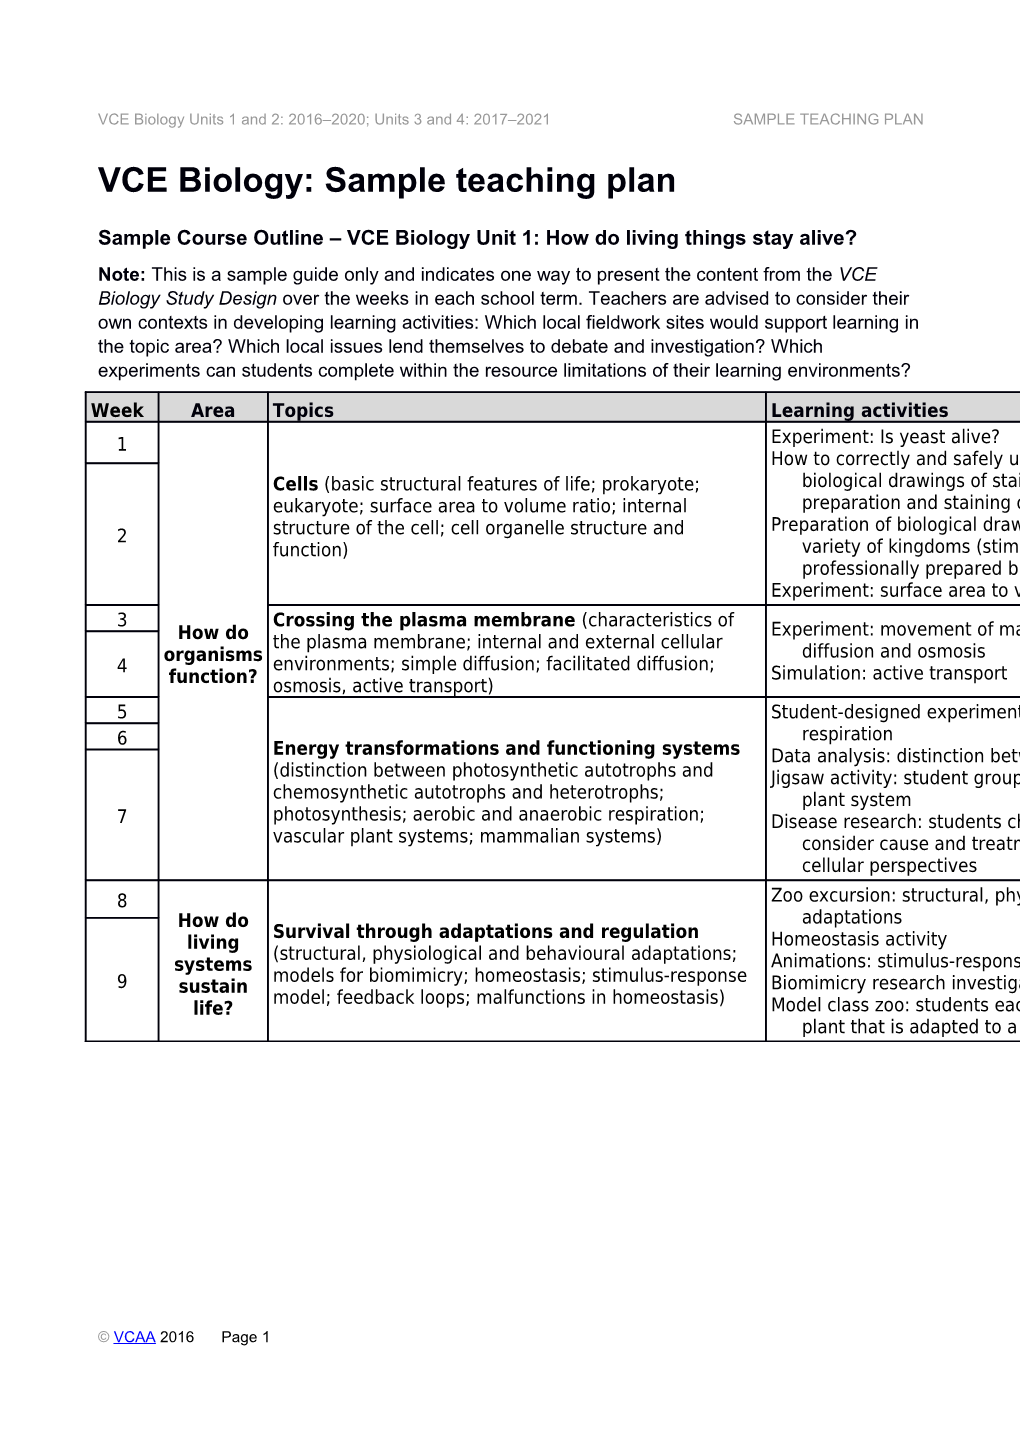 VCE Biology: Sample Teaching Plan